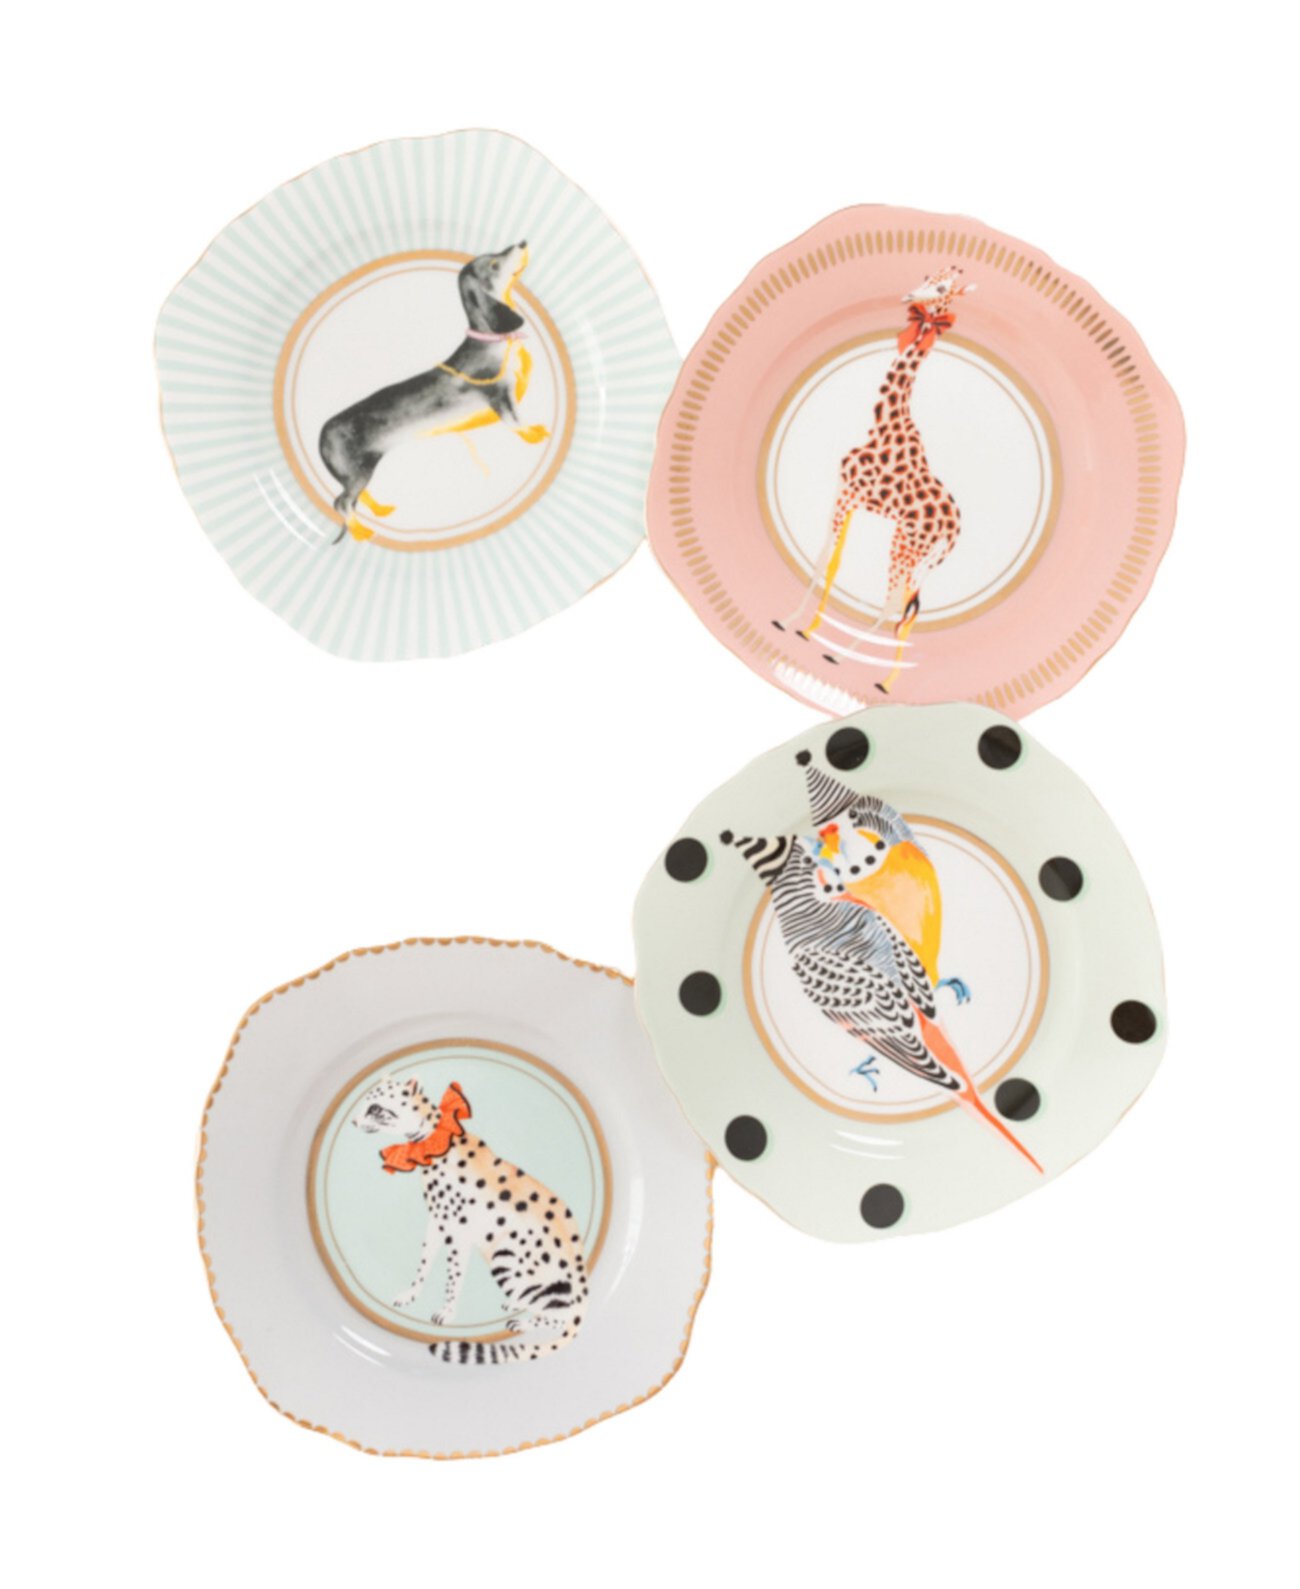 Чайные тарелки с изображением жирафа, леопарда, собаки и птиц, набор из 4 шт. Yvonne Ellen